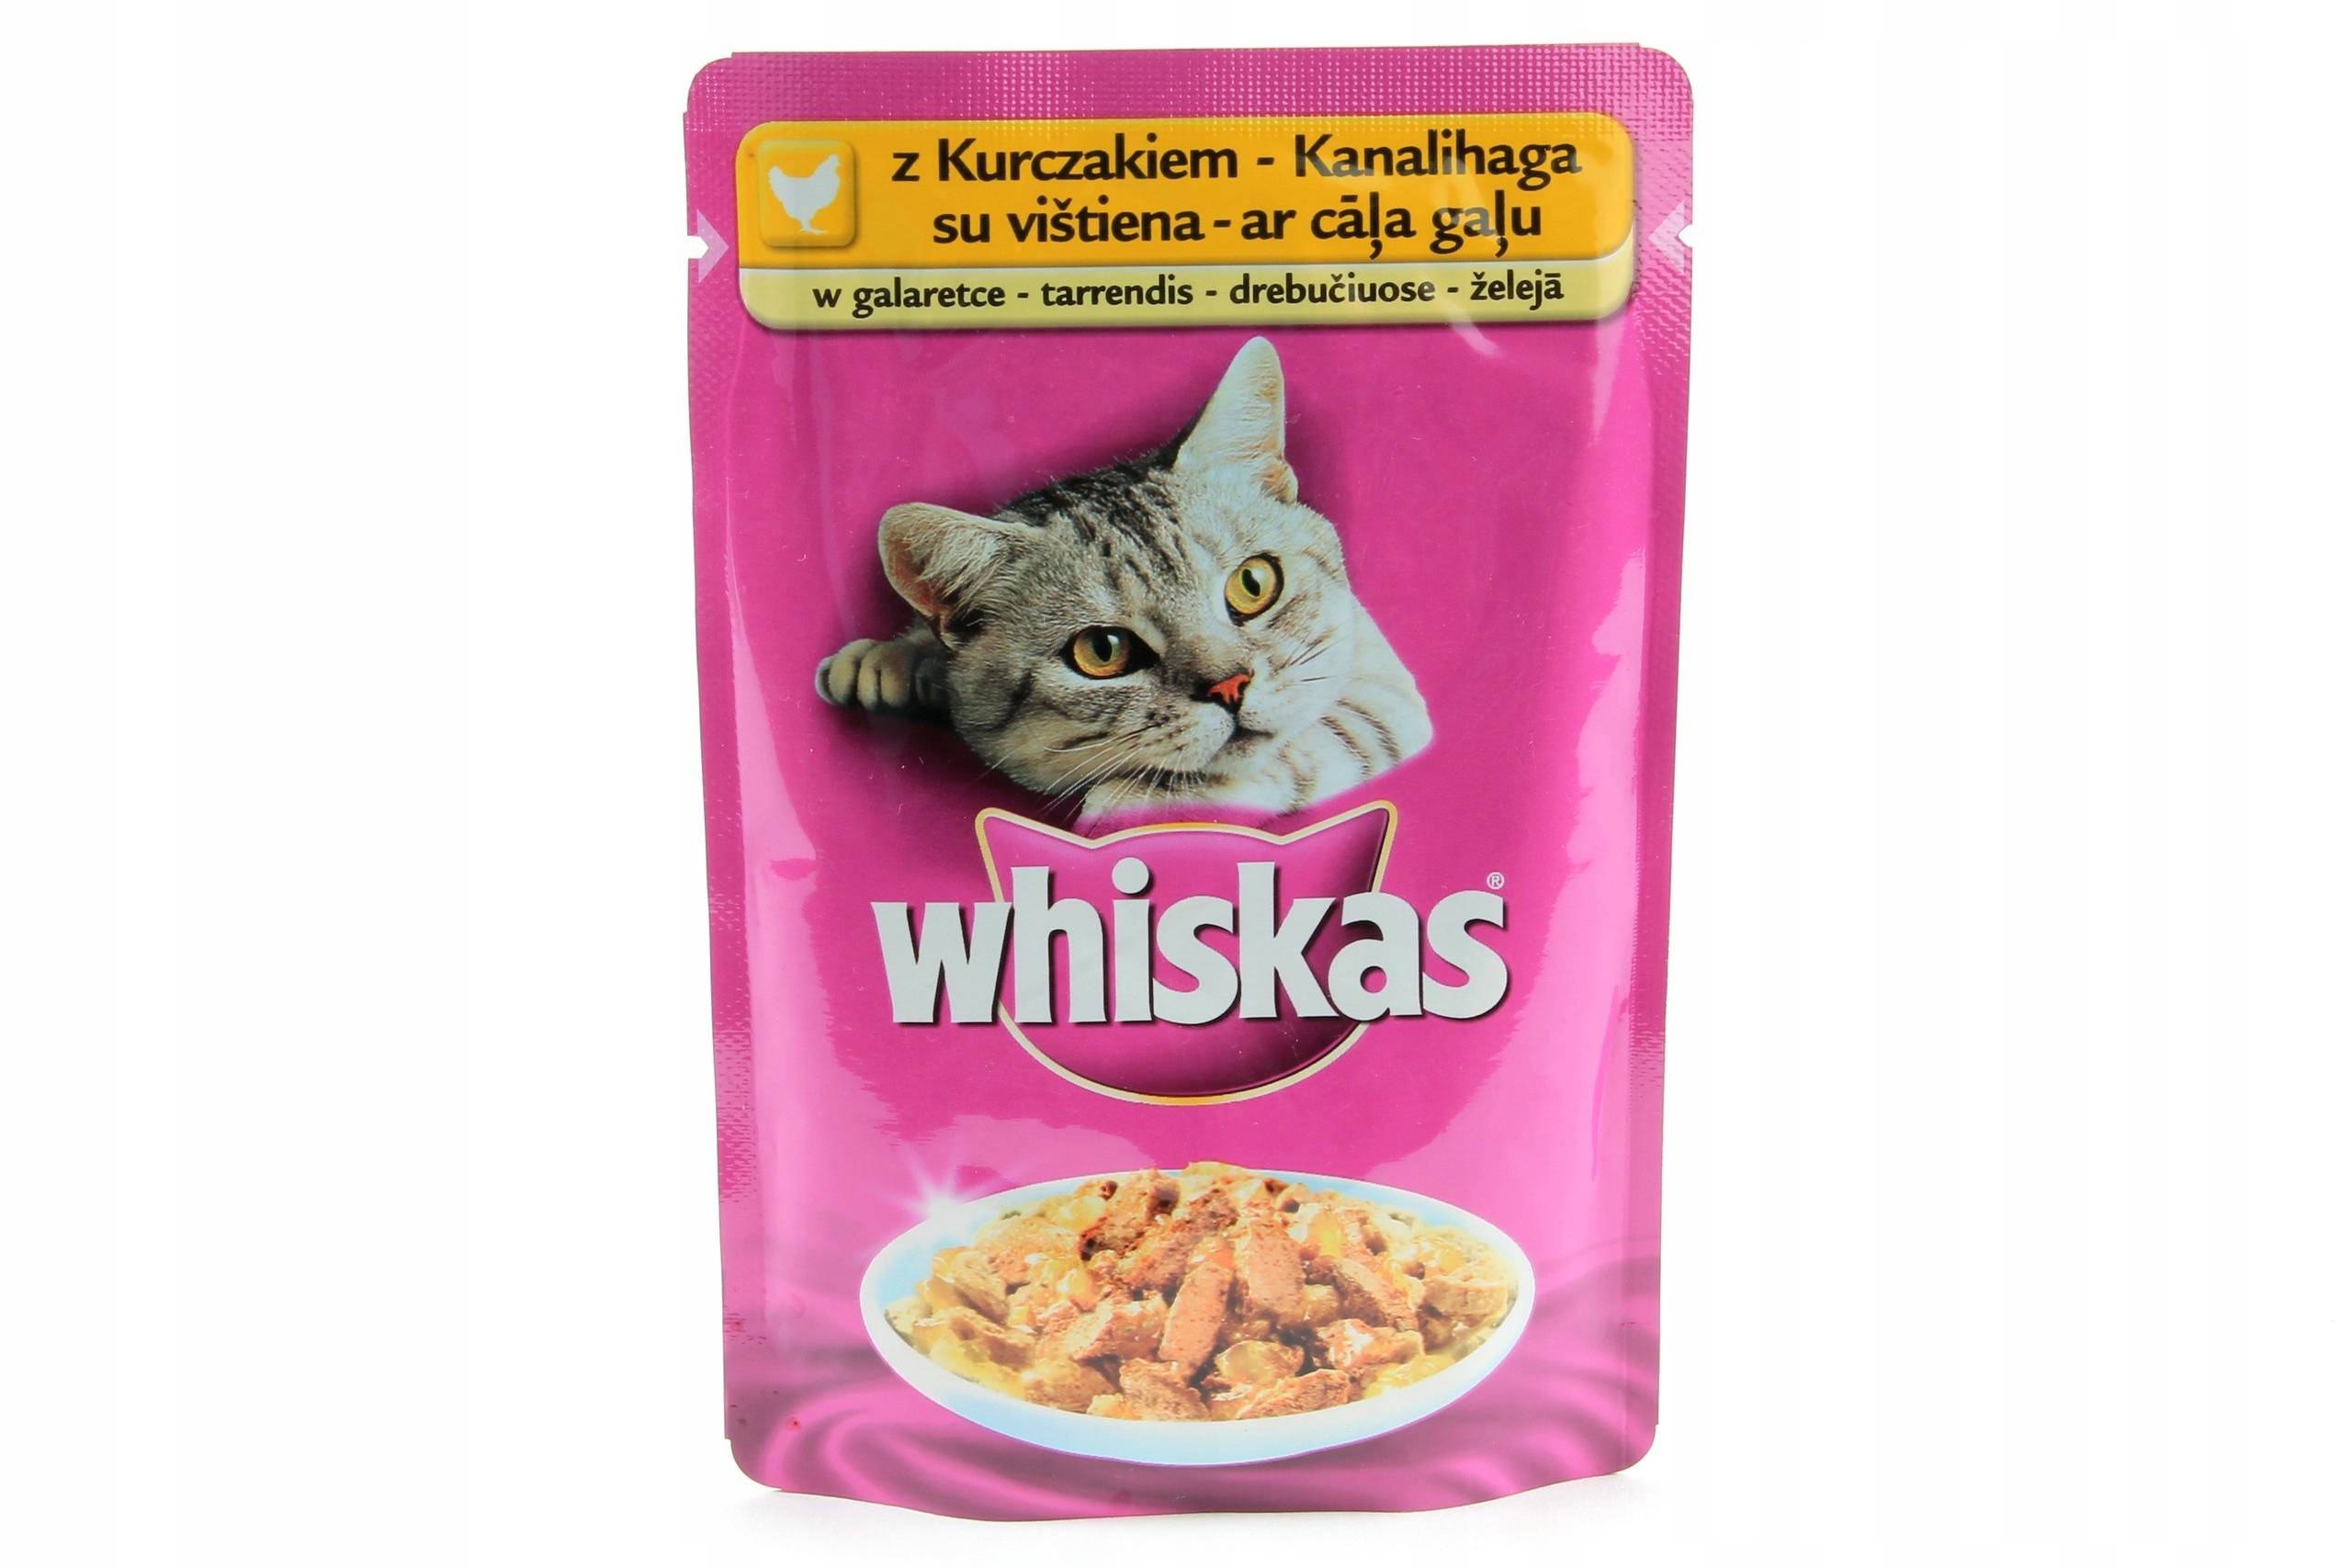 Корм для котят и кошек whiskas («вискас»): отзывы ветеринаров и владельцев животных о нем, его состав и виды, плюсы и минусы